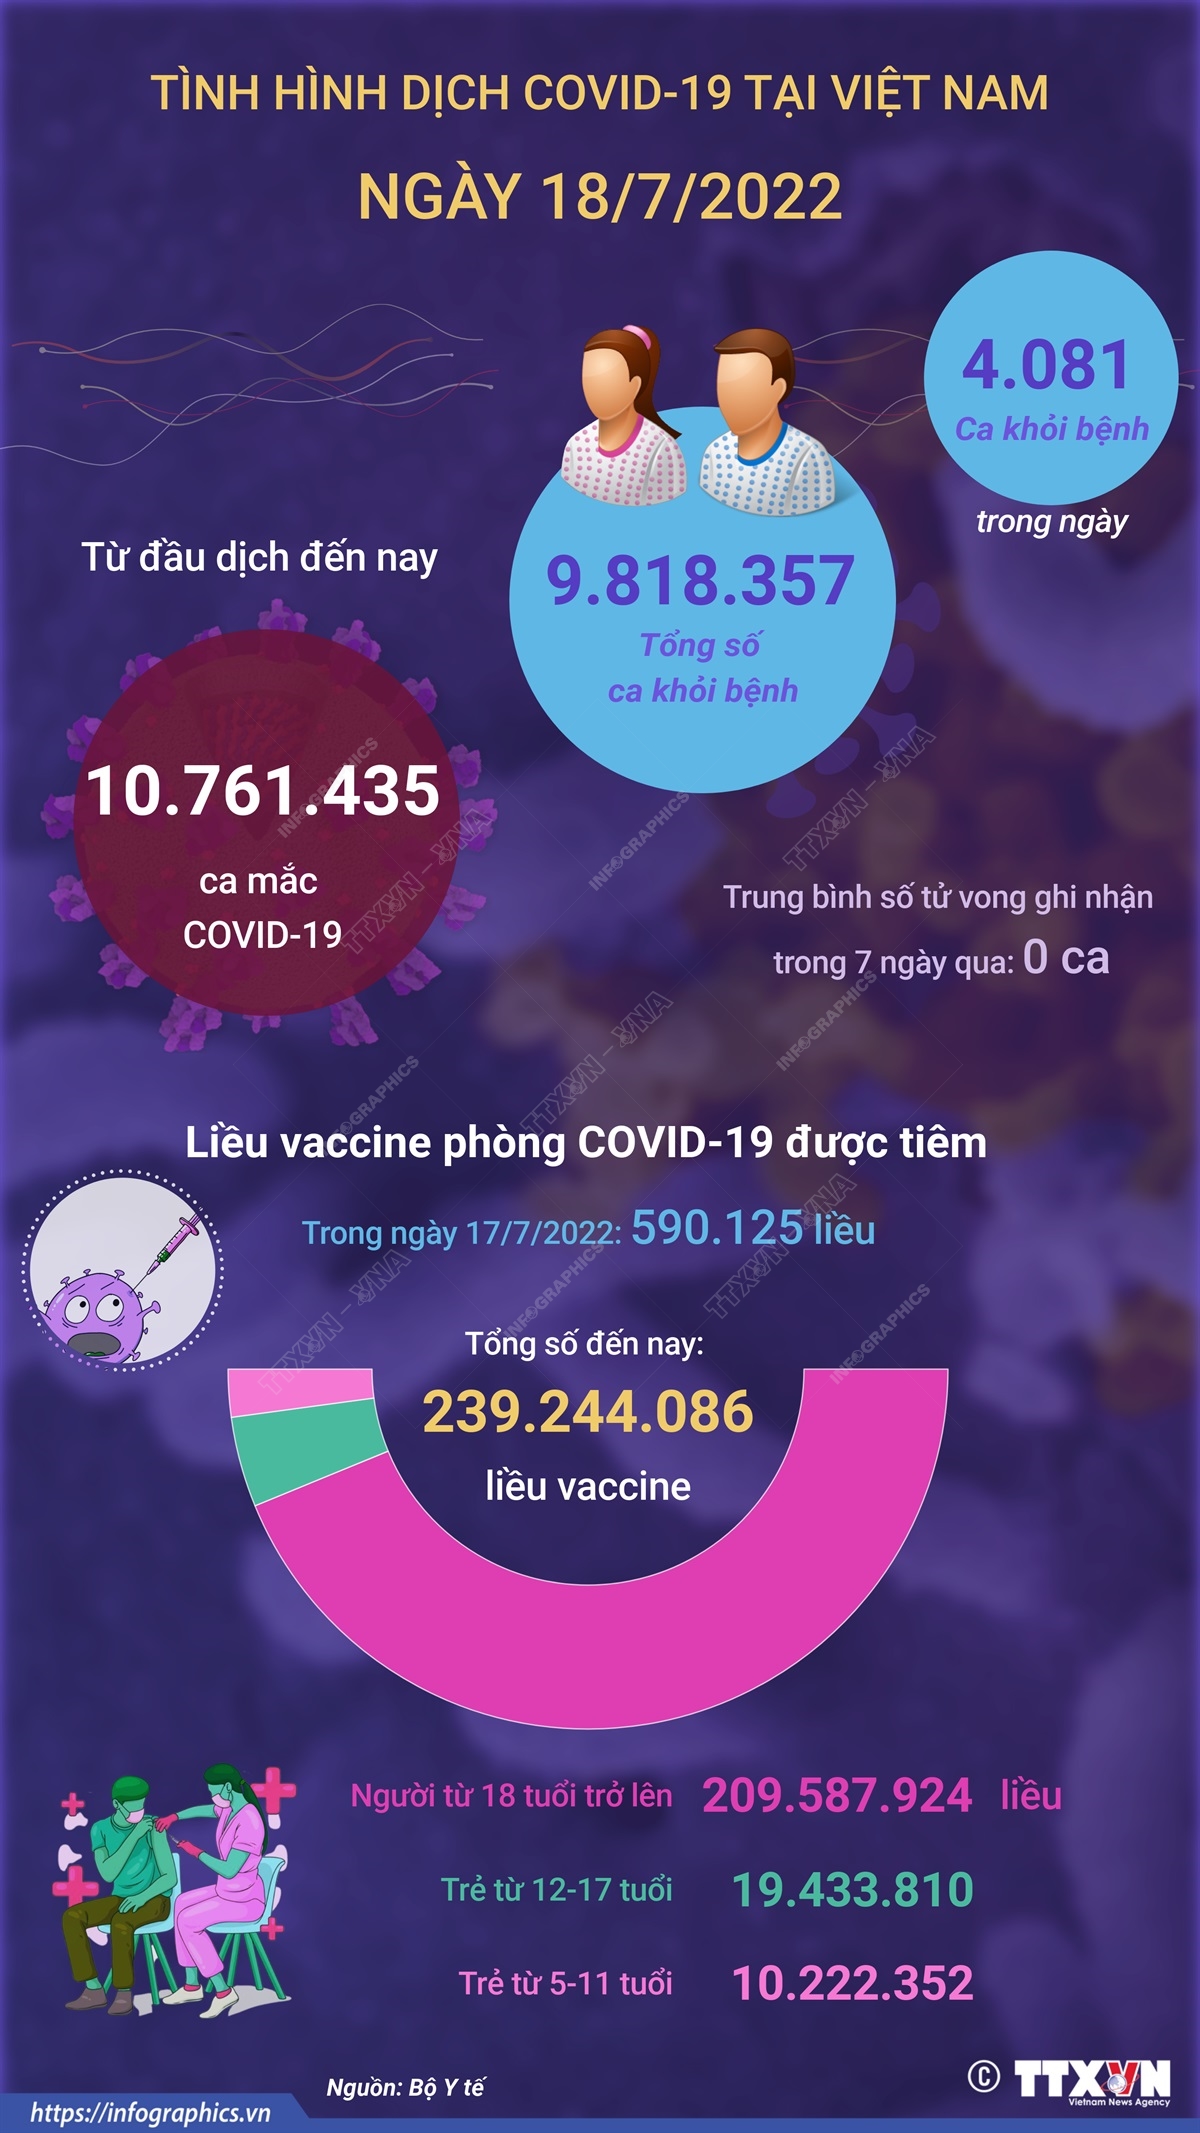 Ngày 18/7: Có 840 ca COVID-19 mới, 4.081 ca khỏi bệnh